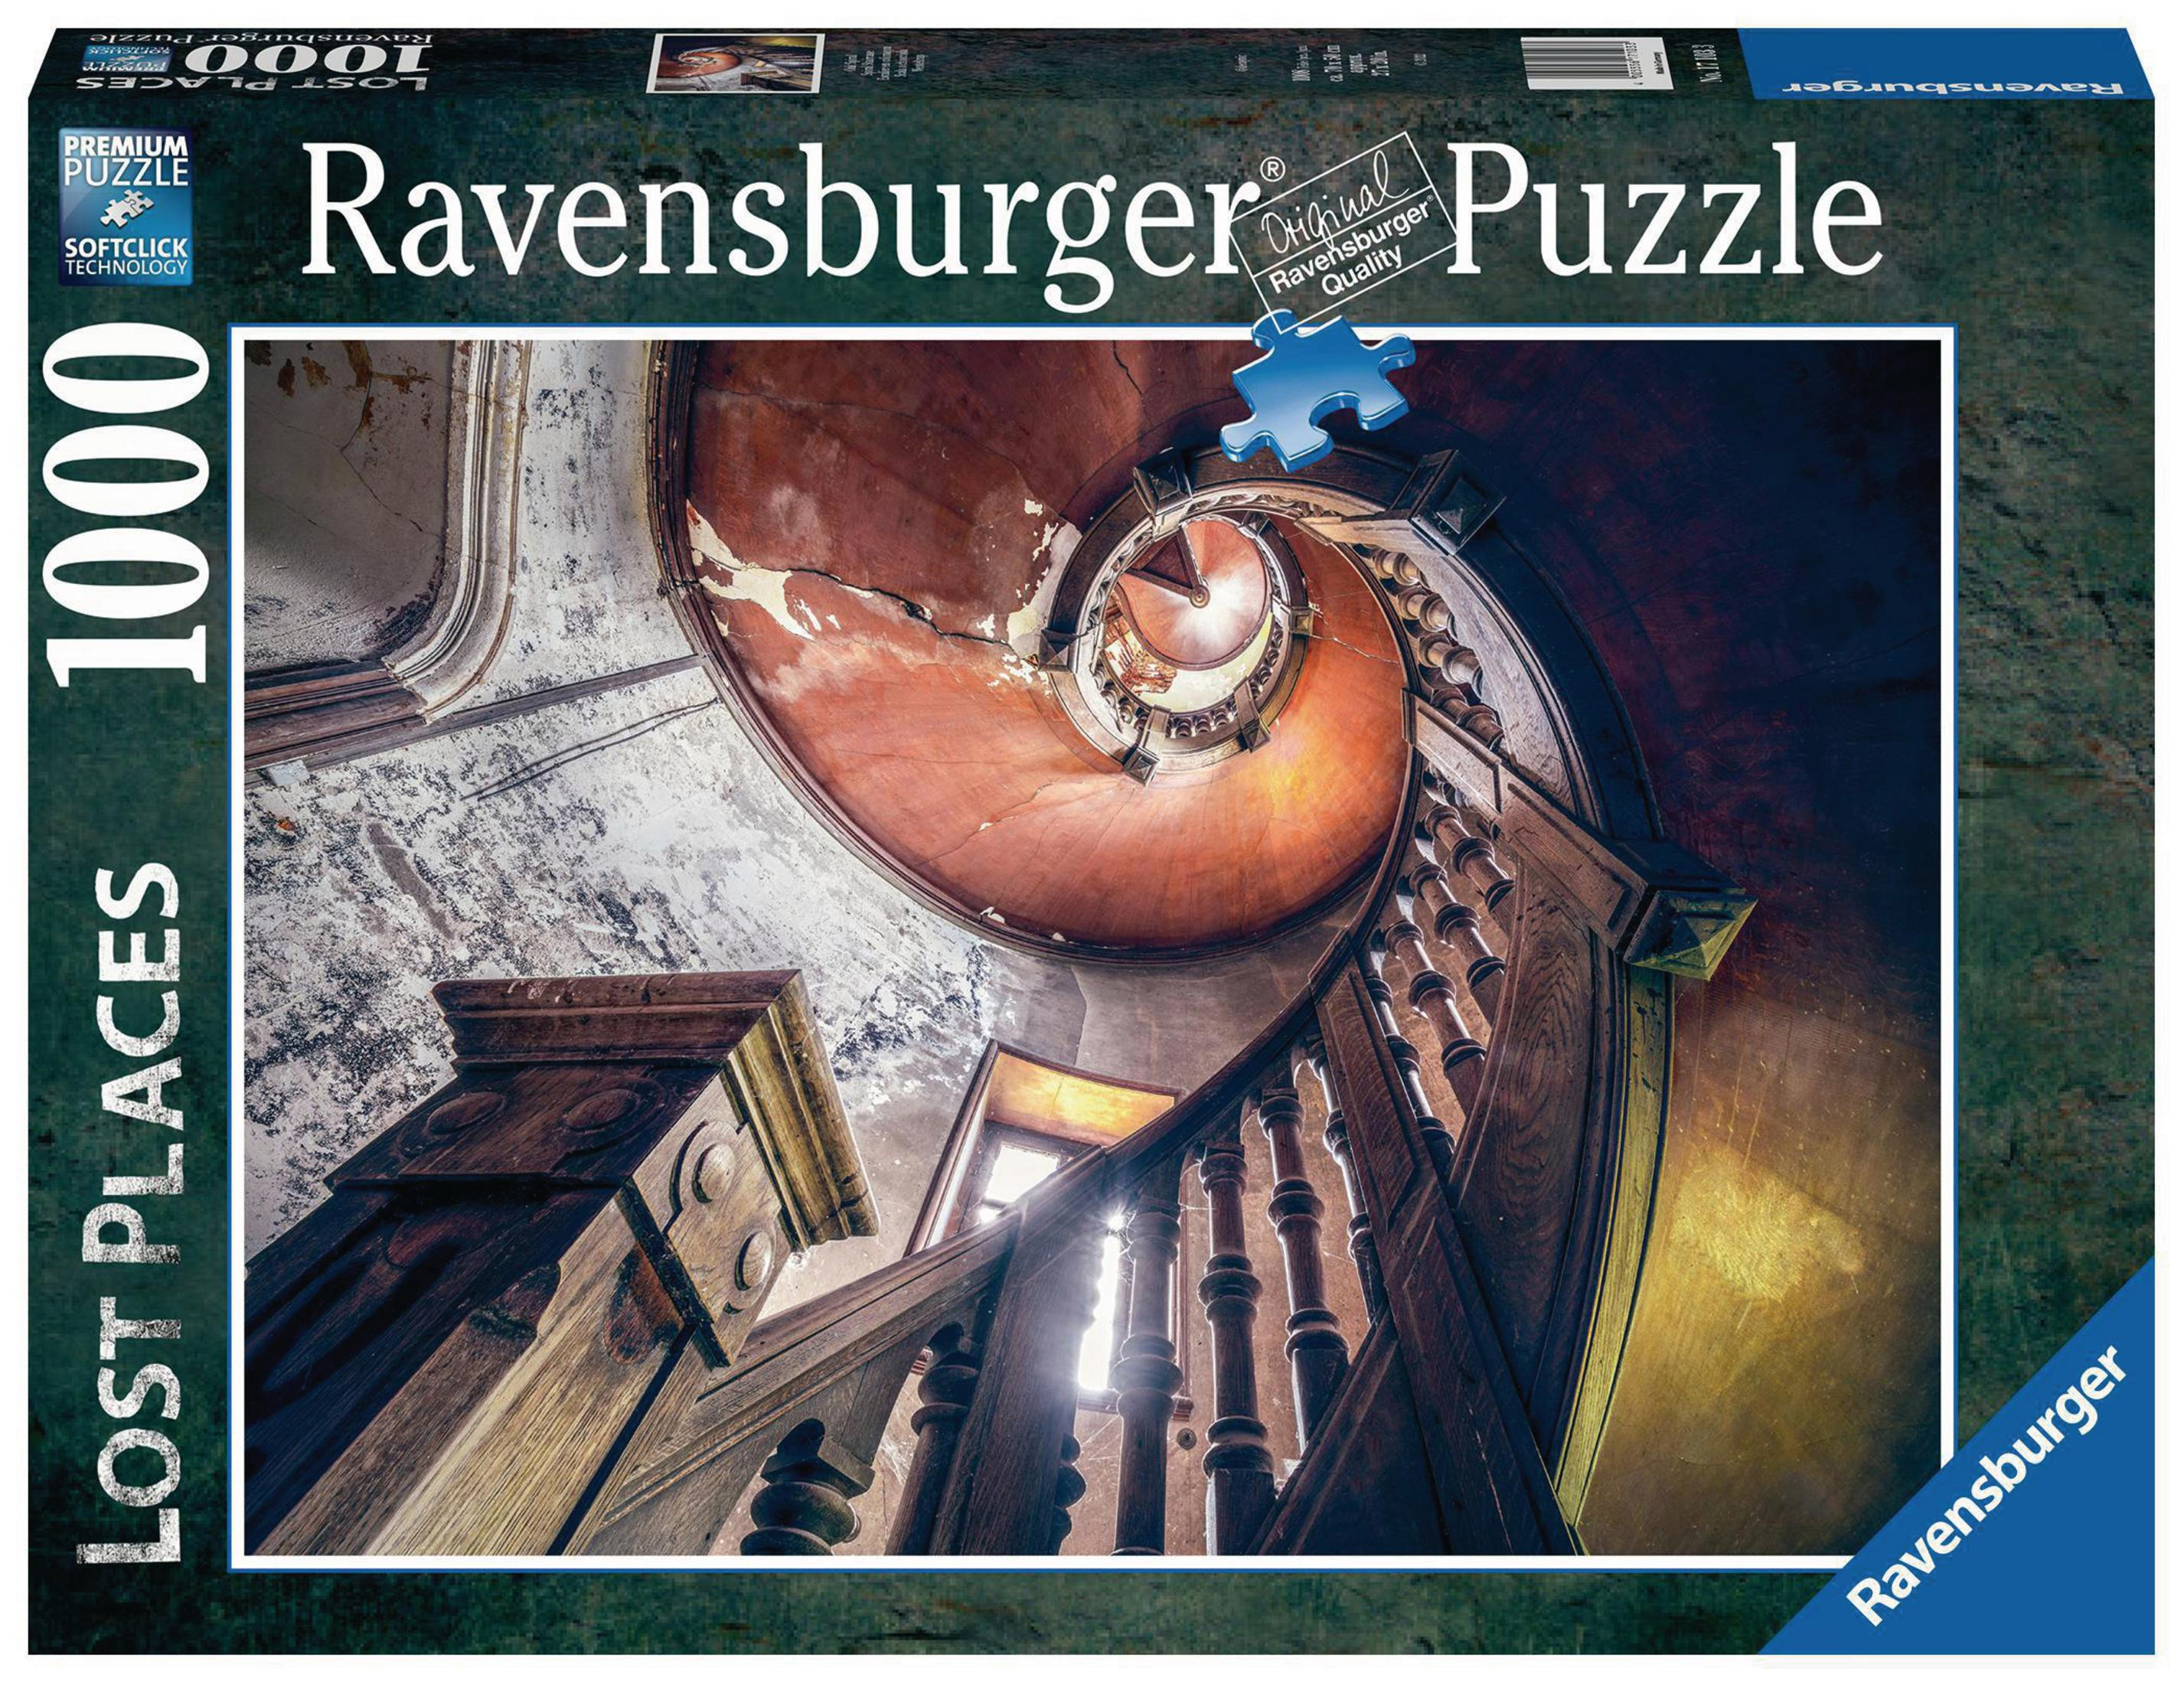 RAVENSBURGER SPIRAL Puzzle 17103 OAK